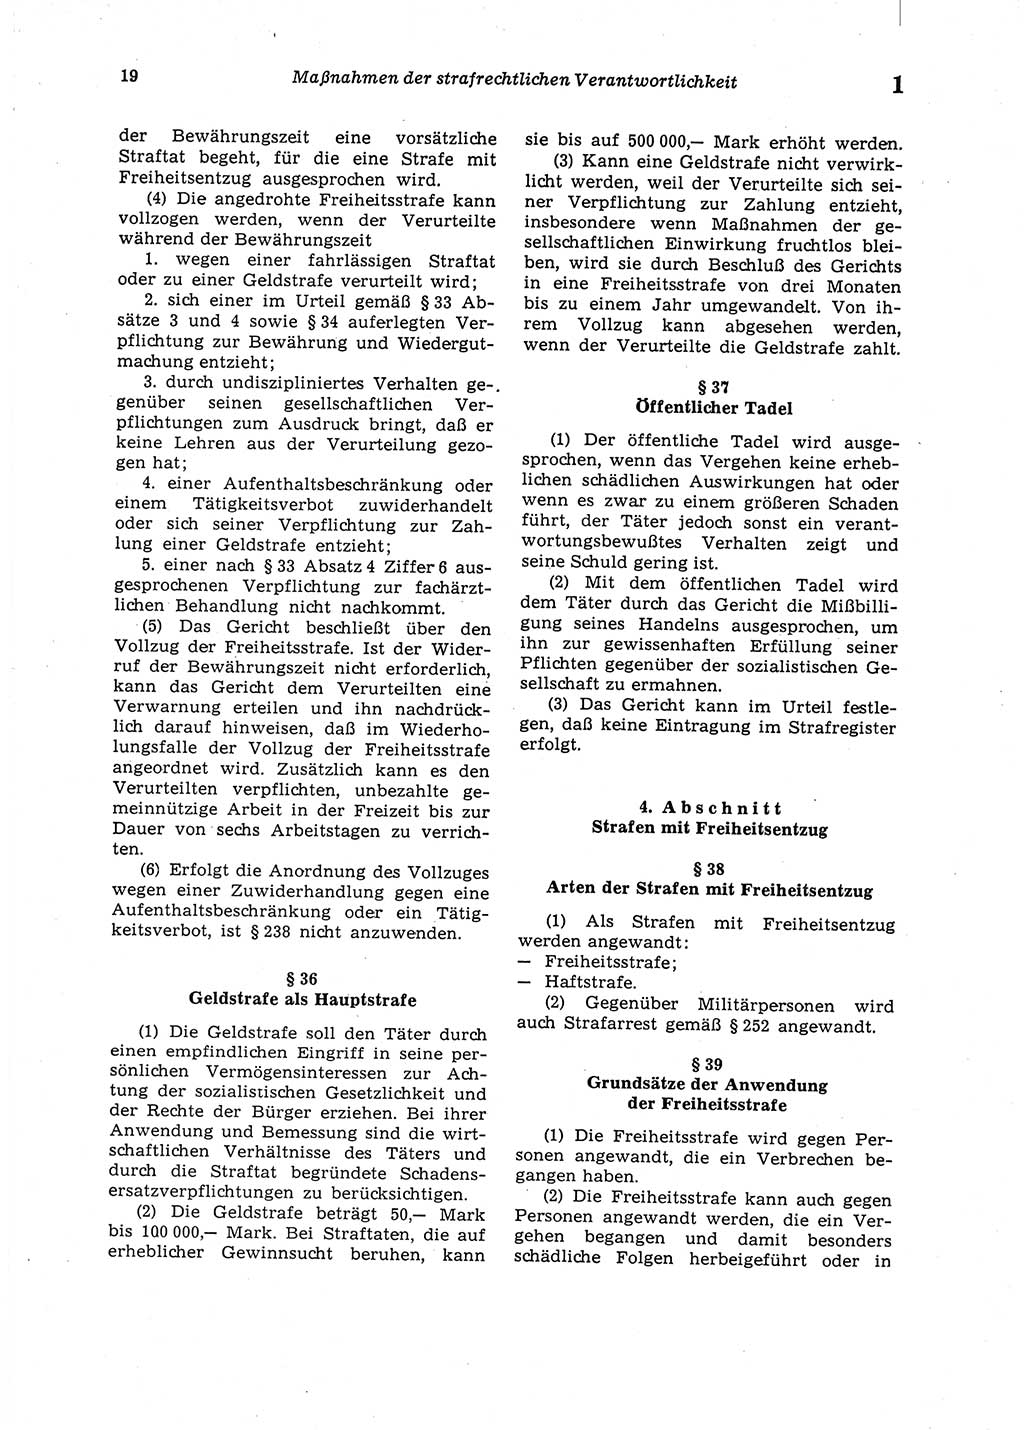 Strafgesetzbuch (StGB) der Deutschen Demokratischen Republik (DDR) 1987, Seite 19 (StGB DDR 1987, S. 19)